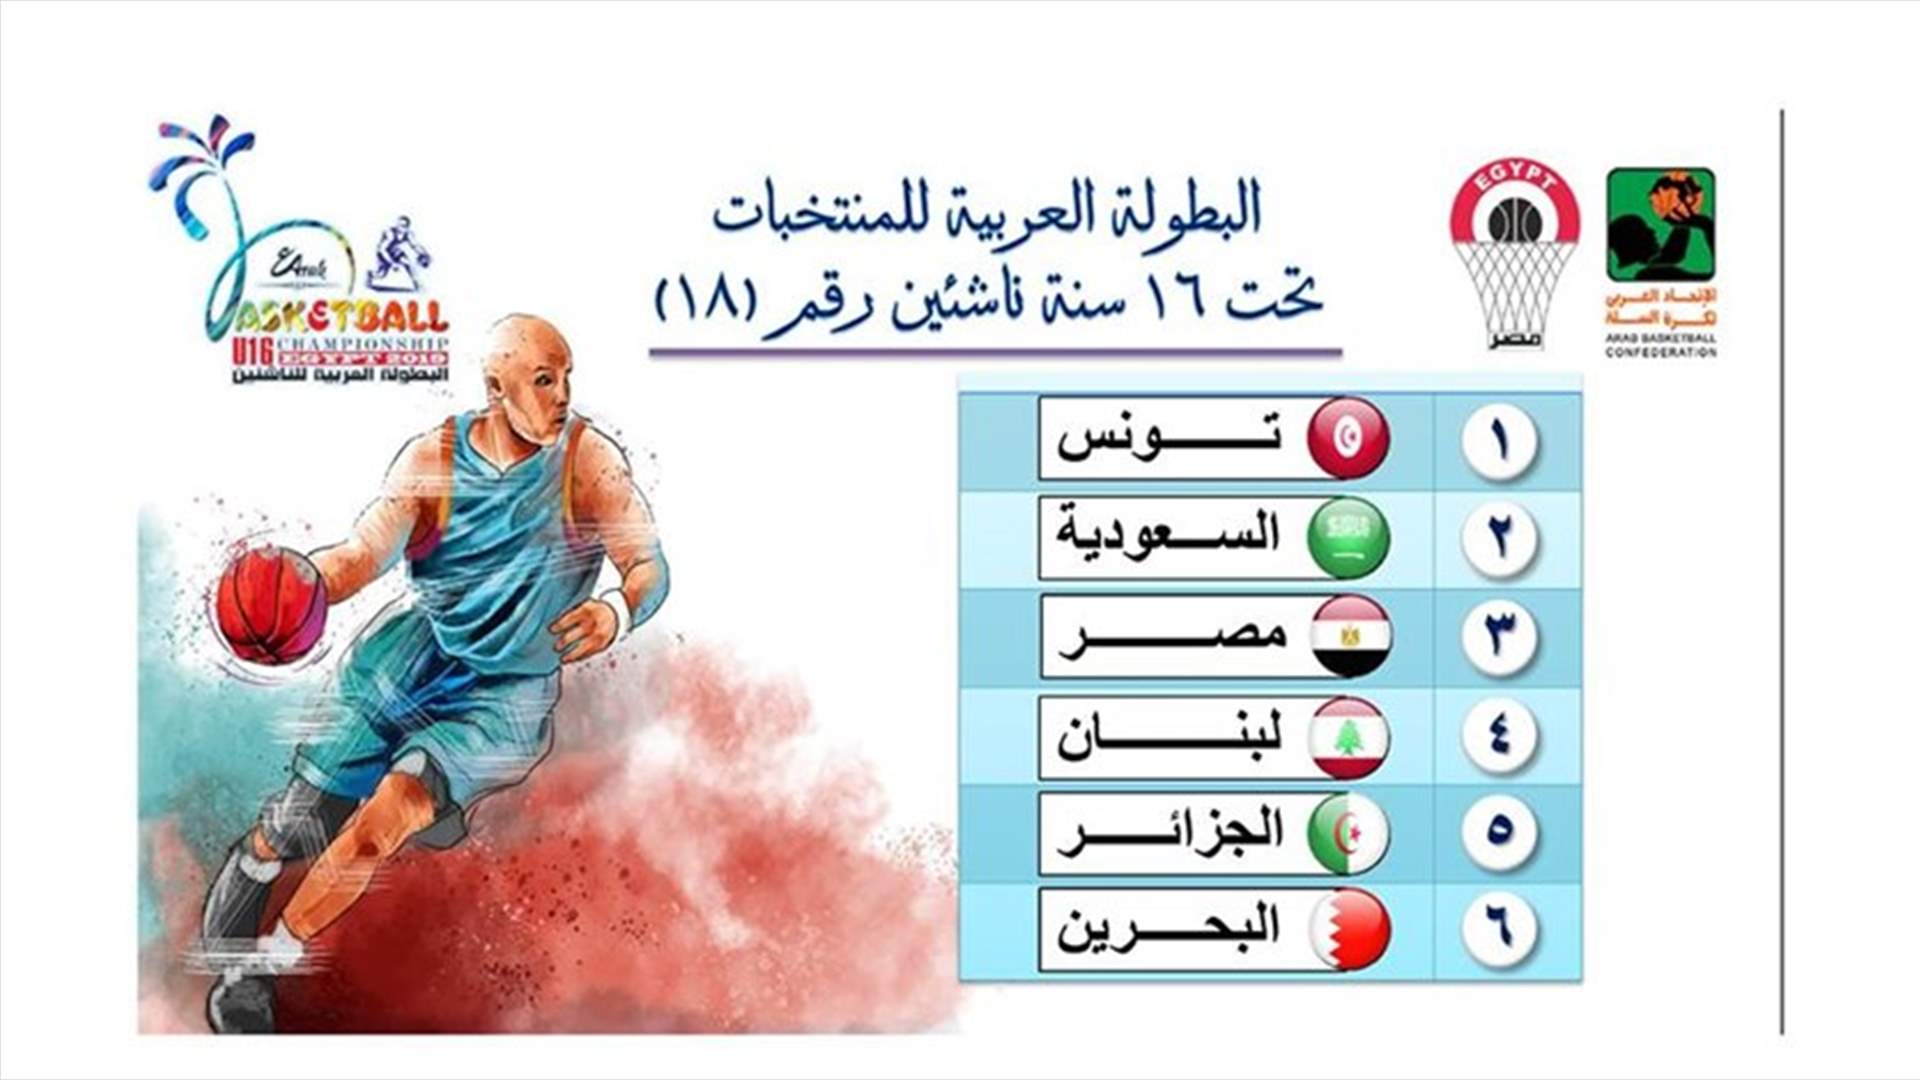 البطولة العربية للمنتخبات تحت الـ16 سنة تنطلق اليوم ... وهذا هو برنامج المباريات